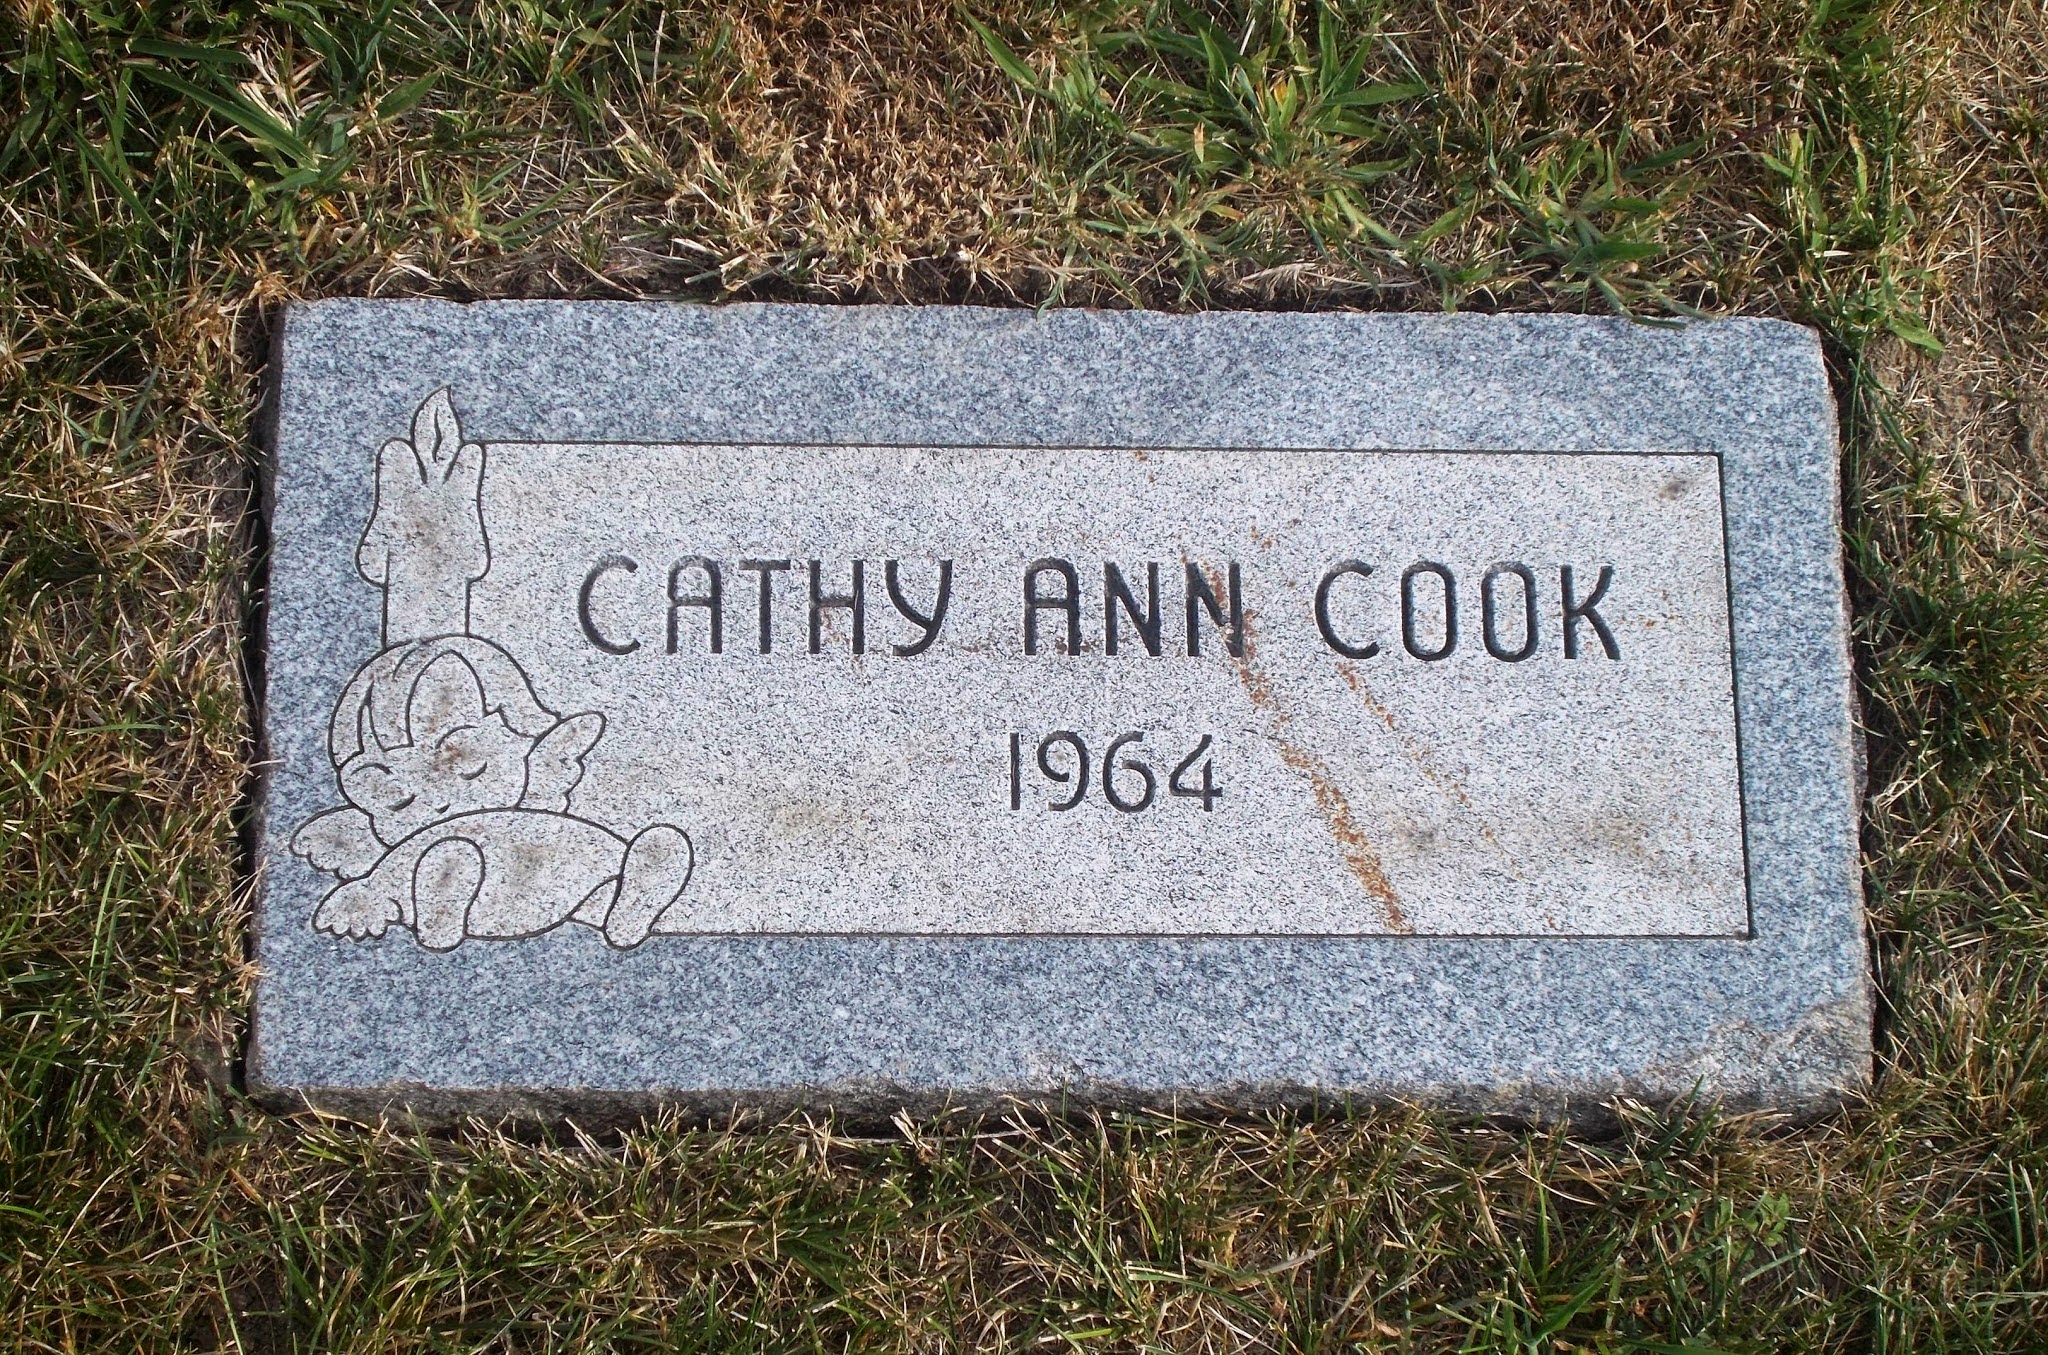 Cathy Ann Cook